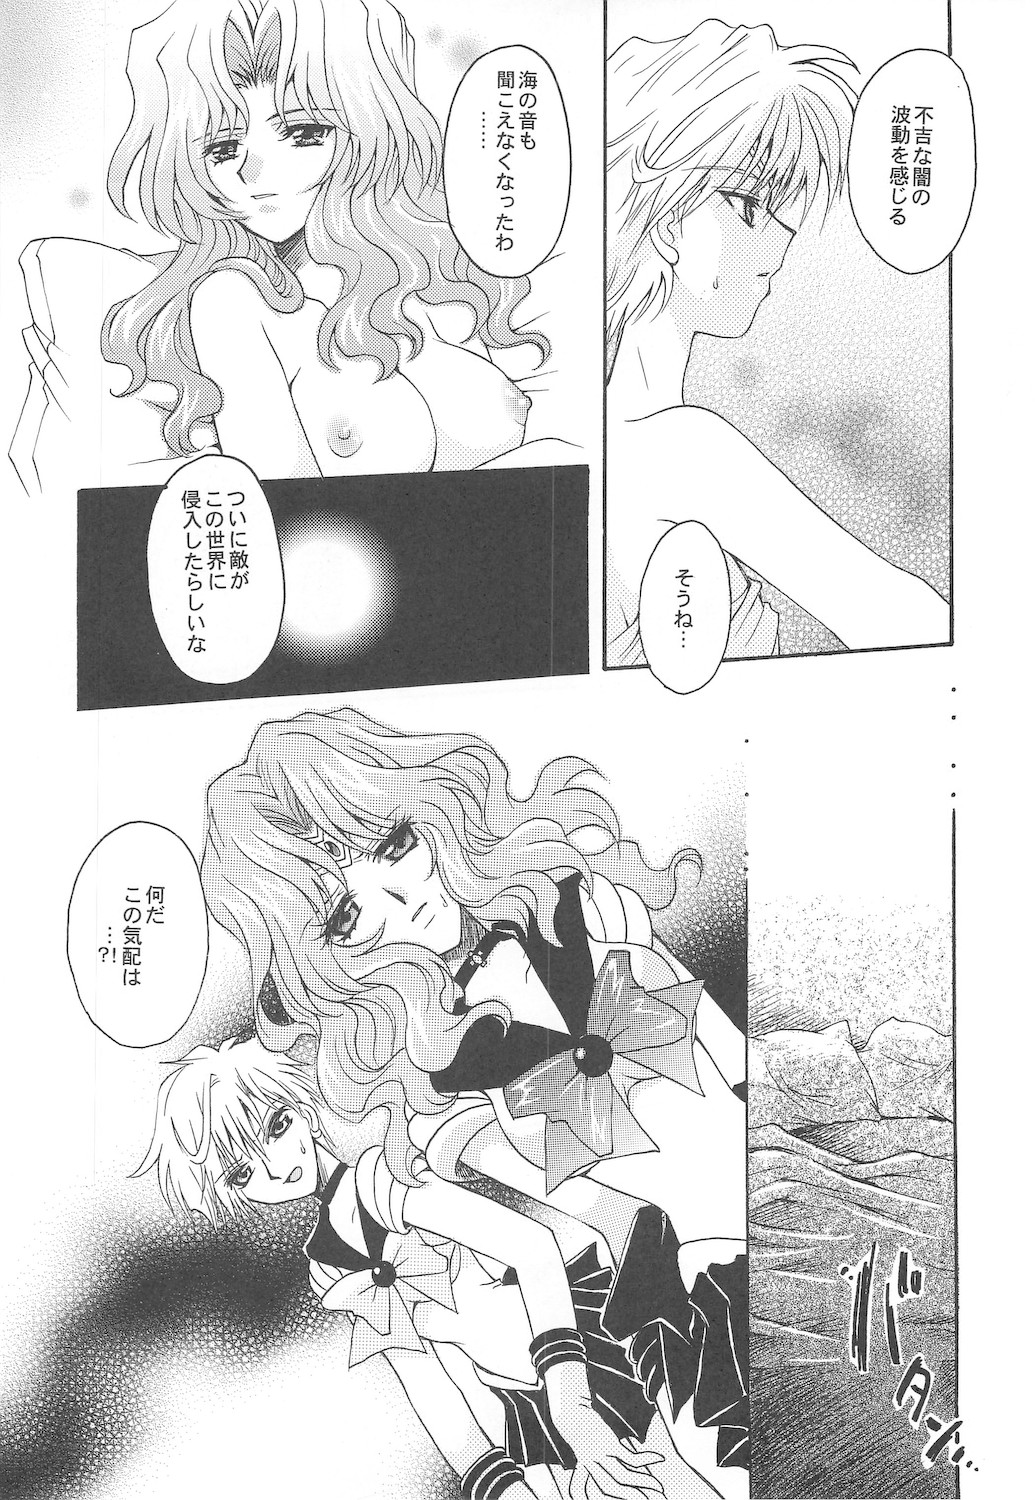 [Kotori Jimusho]  Owaru Sekai dai 1 shou dai 2 shou (Sailor Moon) 